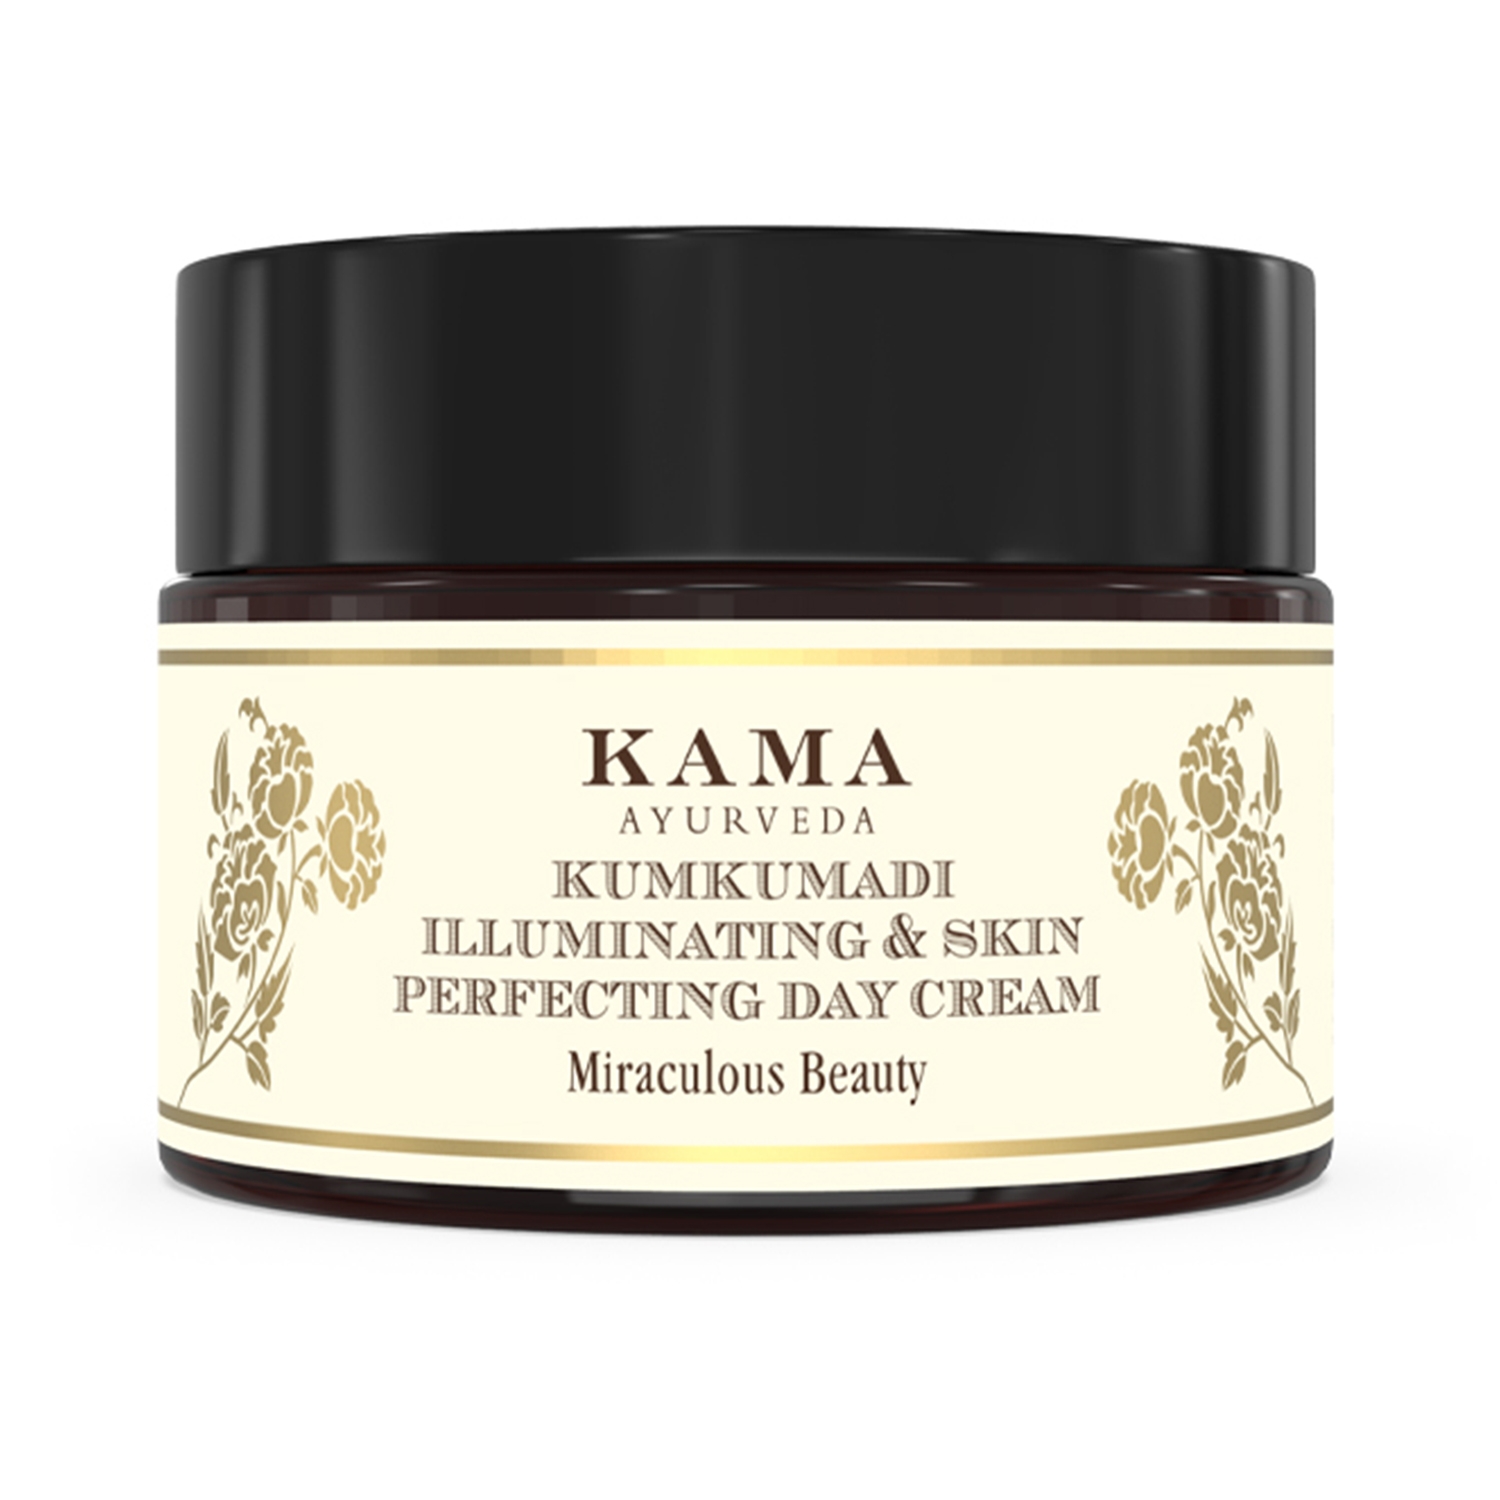 Kama Ayurveda Kumkumadi Illuminating & Skin Perfecting Day Cream (25g)